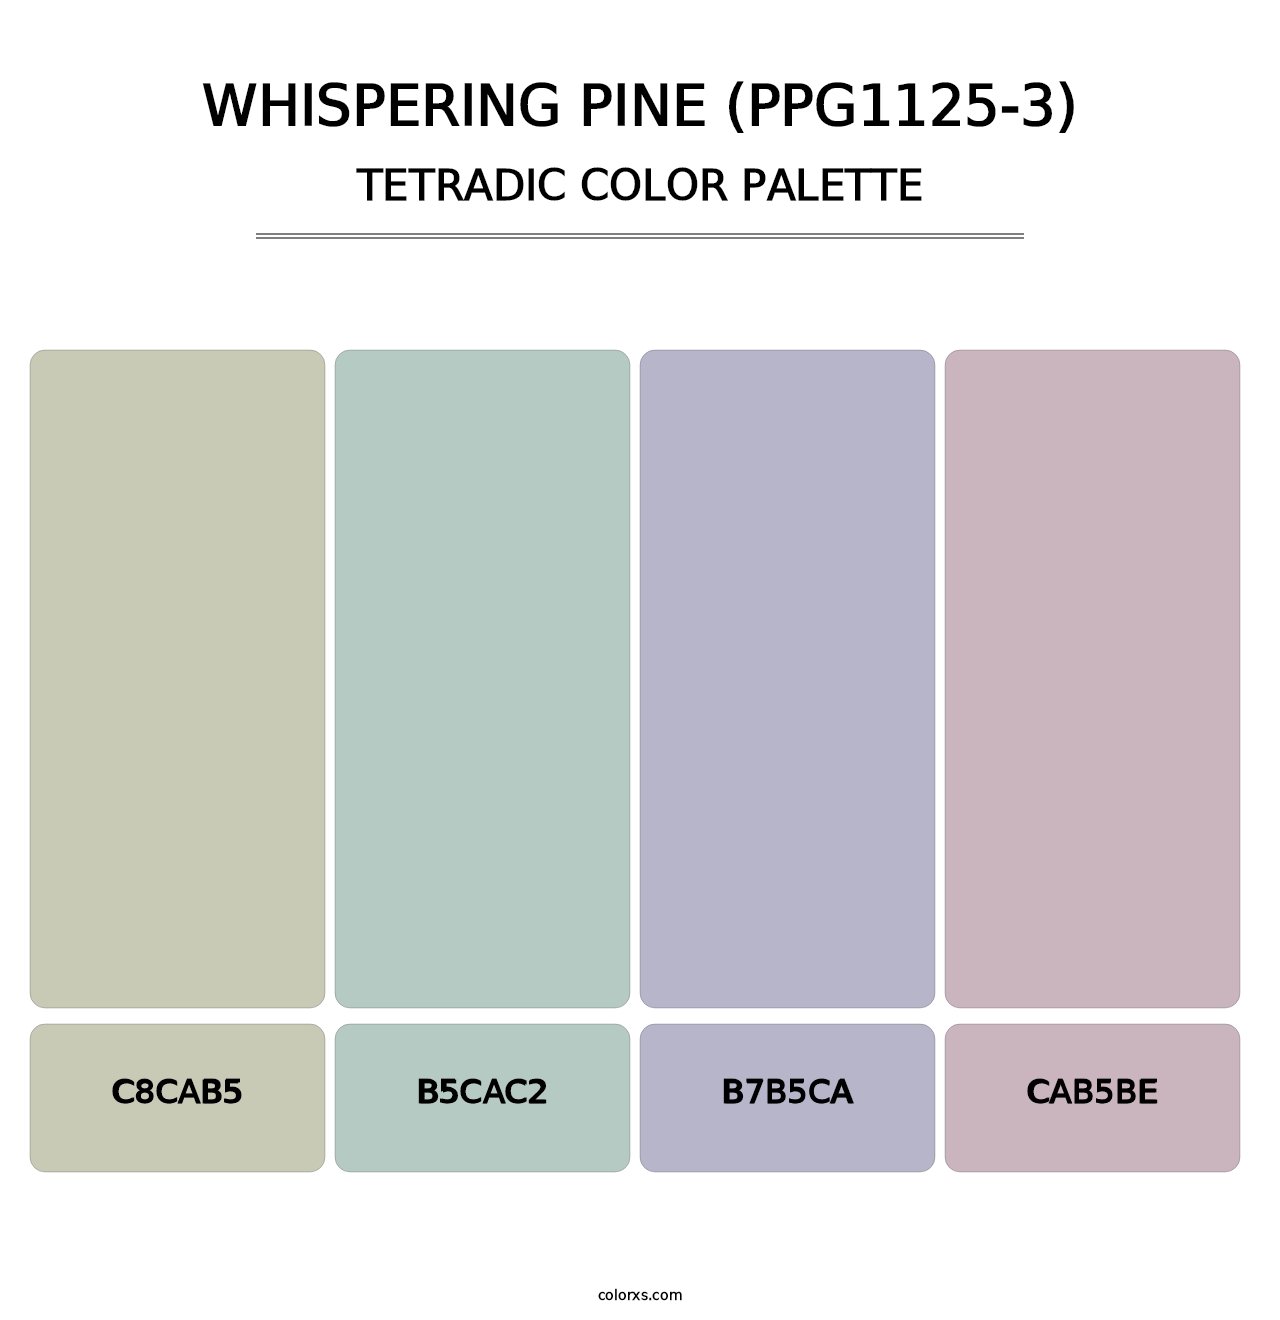 Whispering Pine (PPG1125-3) - Tetradic Color Palette